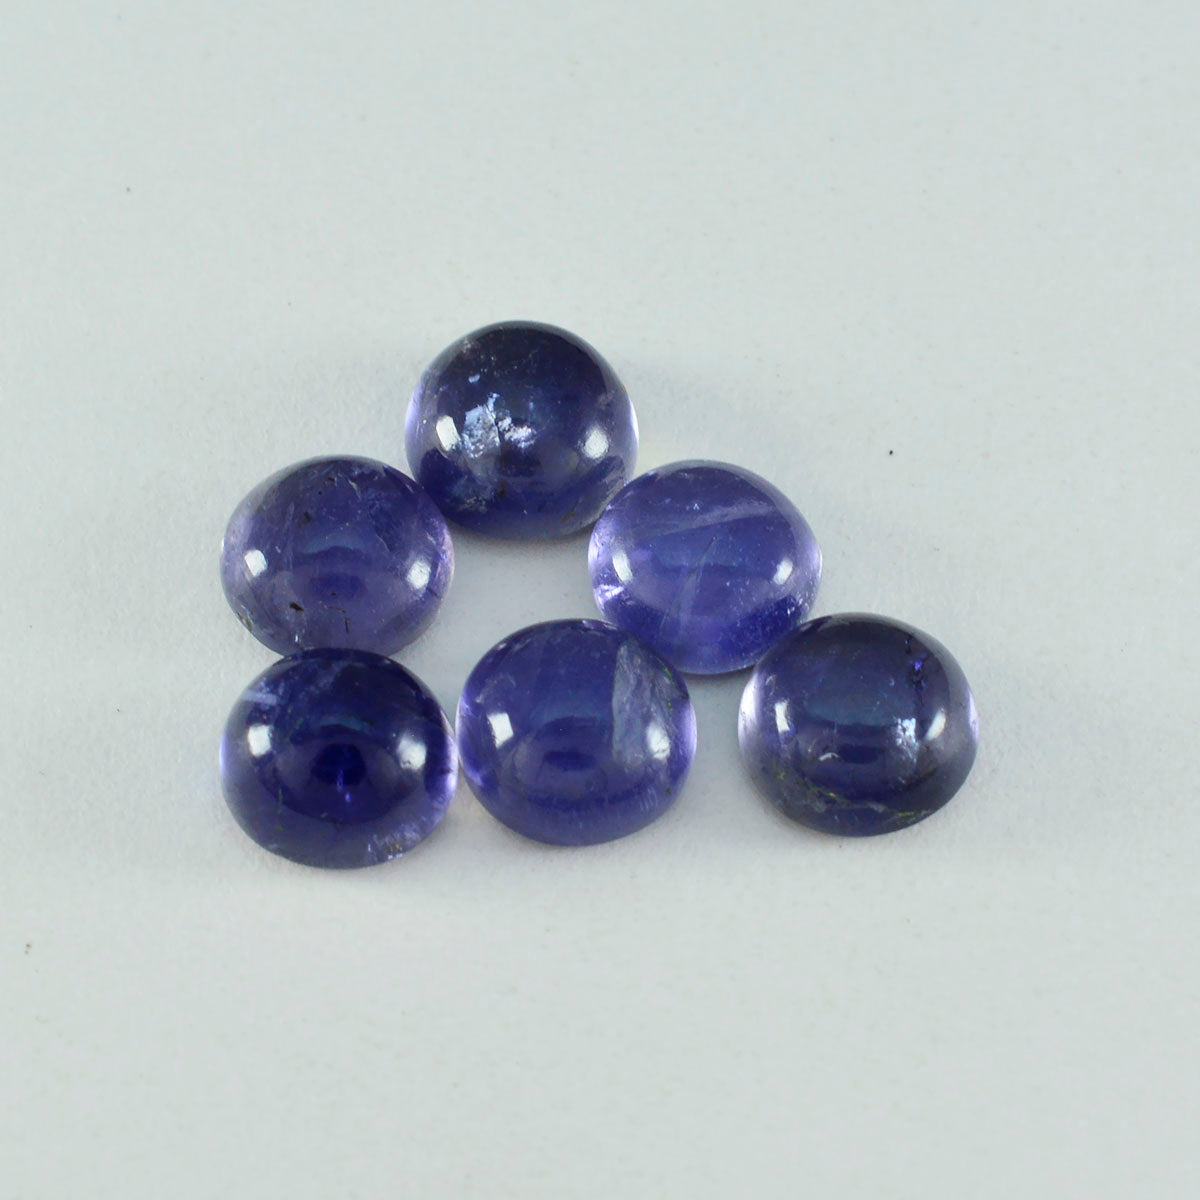 riyogems 1pc cabochon di iolite blu 14x14 mm di forma rotonda con pietra preziosa di ottima qualità